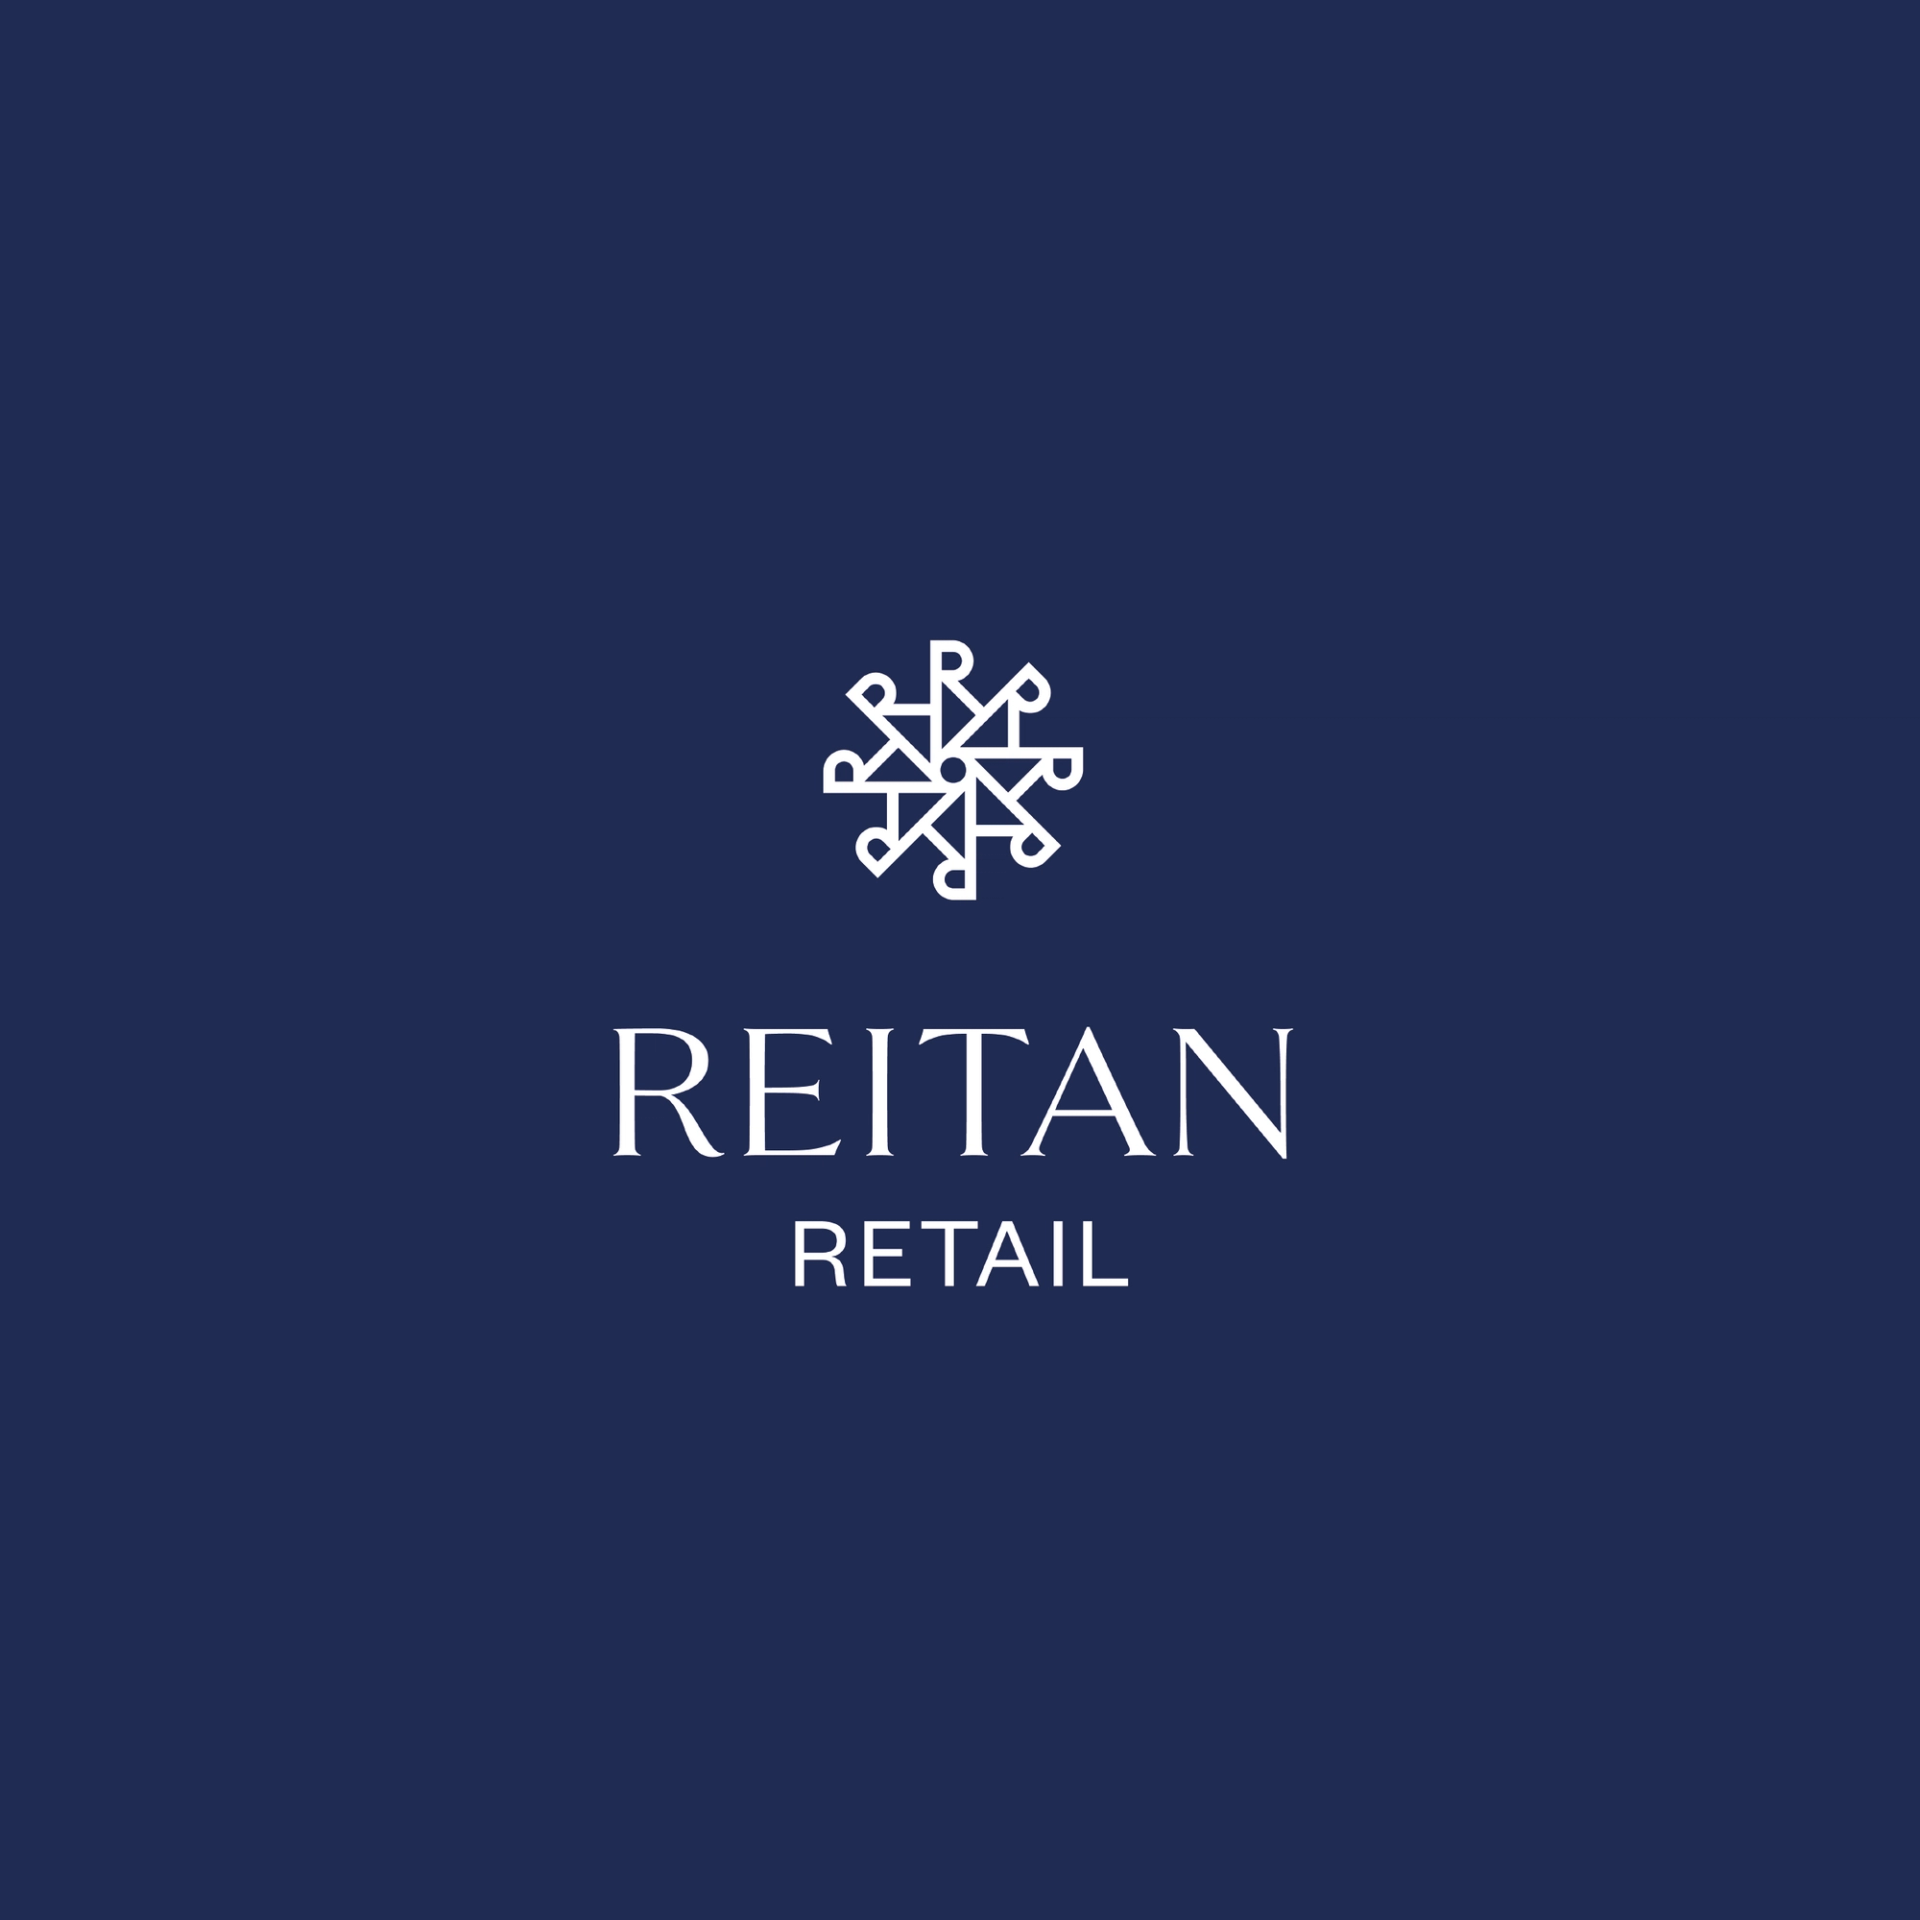 Reitan white logo